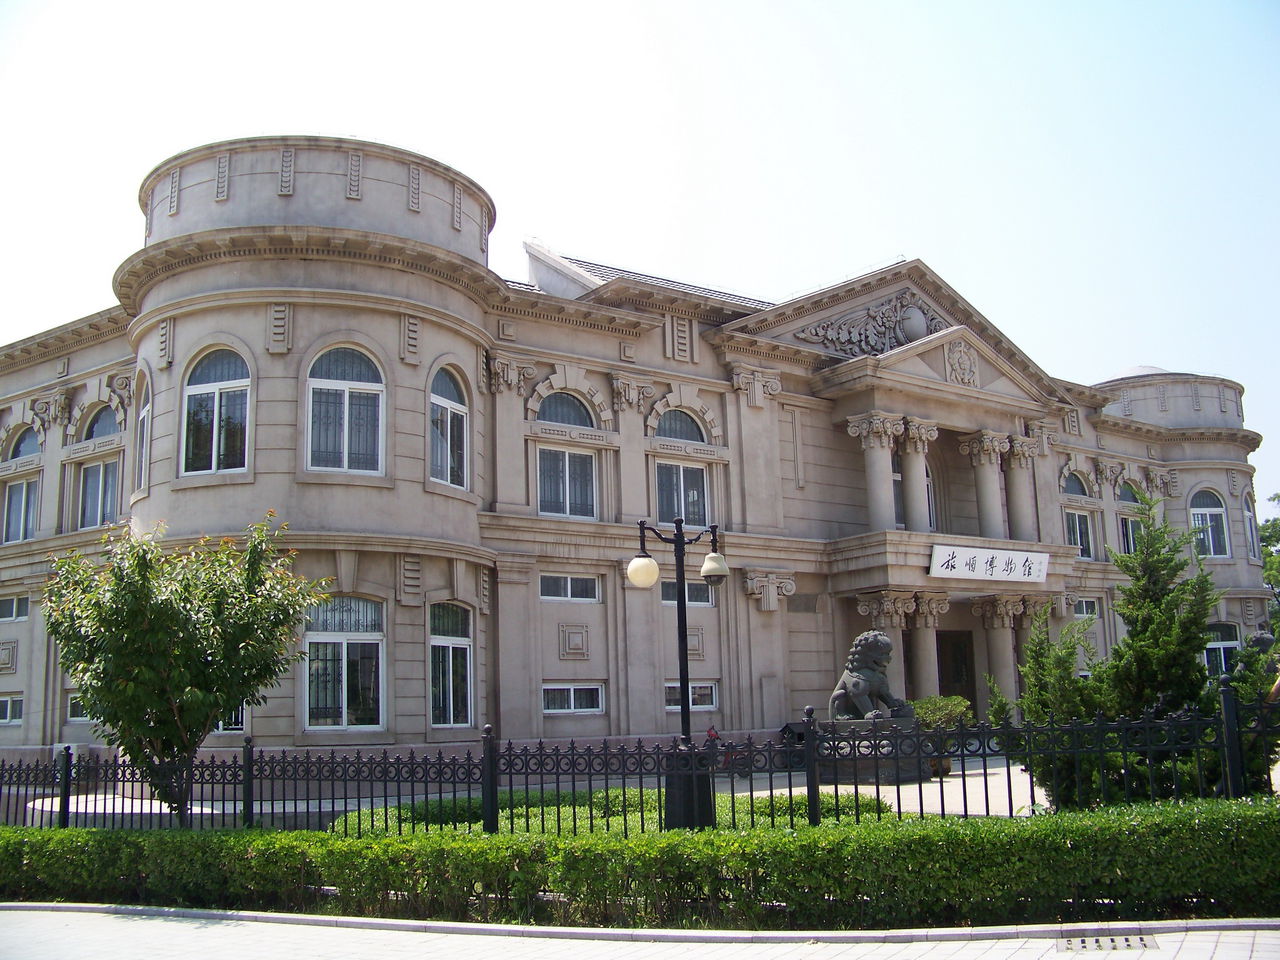 旅順博物館